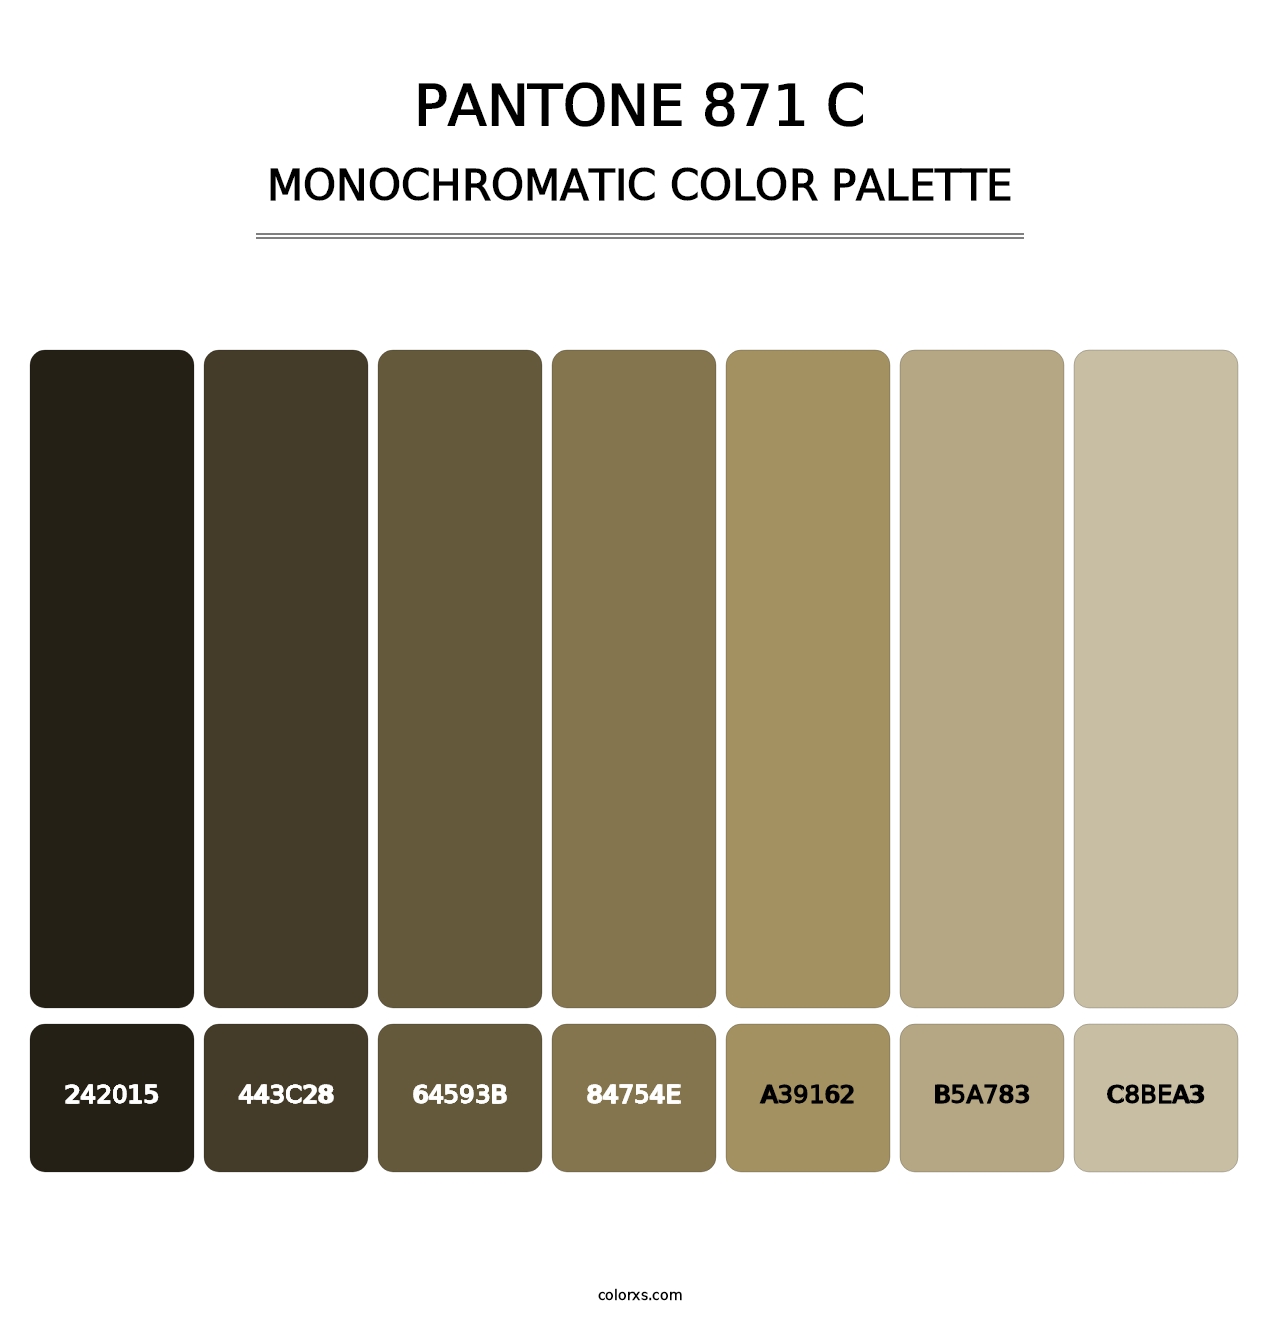 PANTONE 871 C - Monochromatic Color Palette